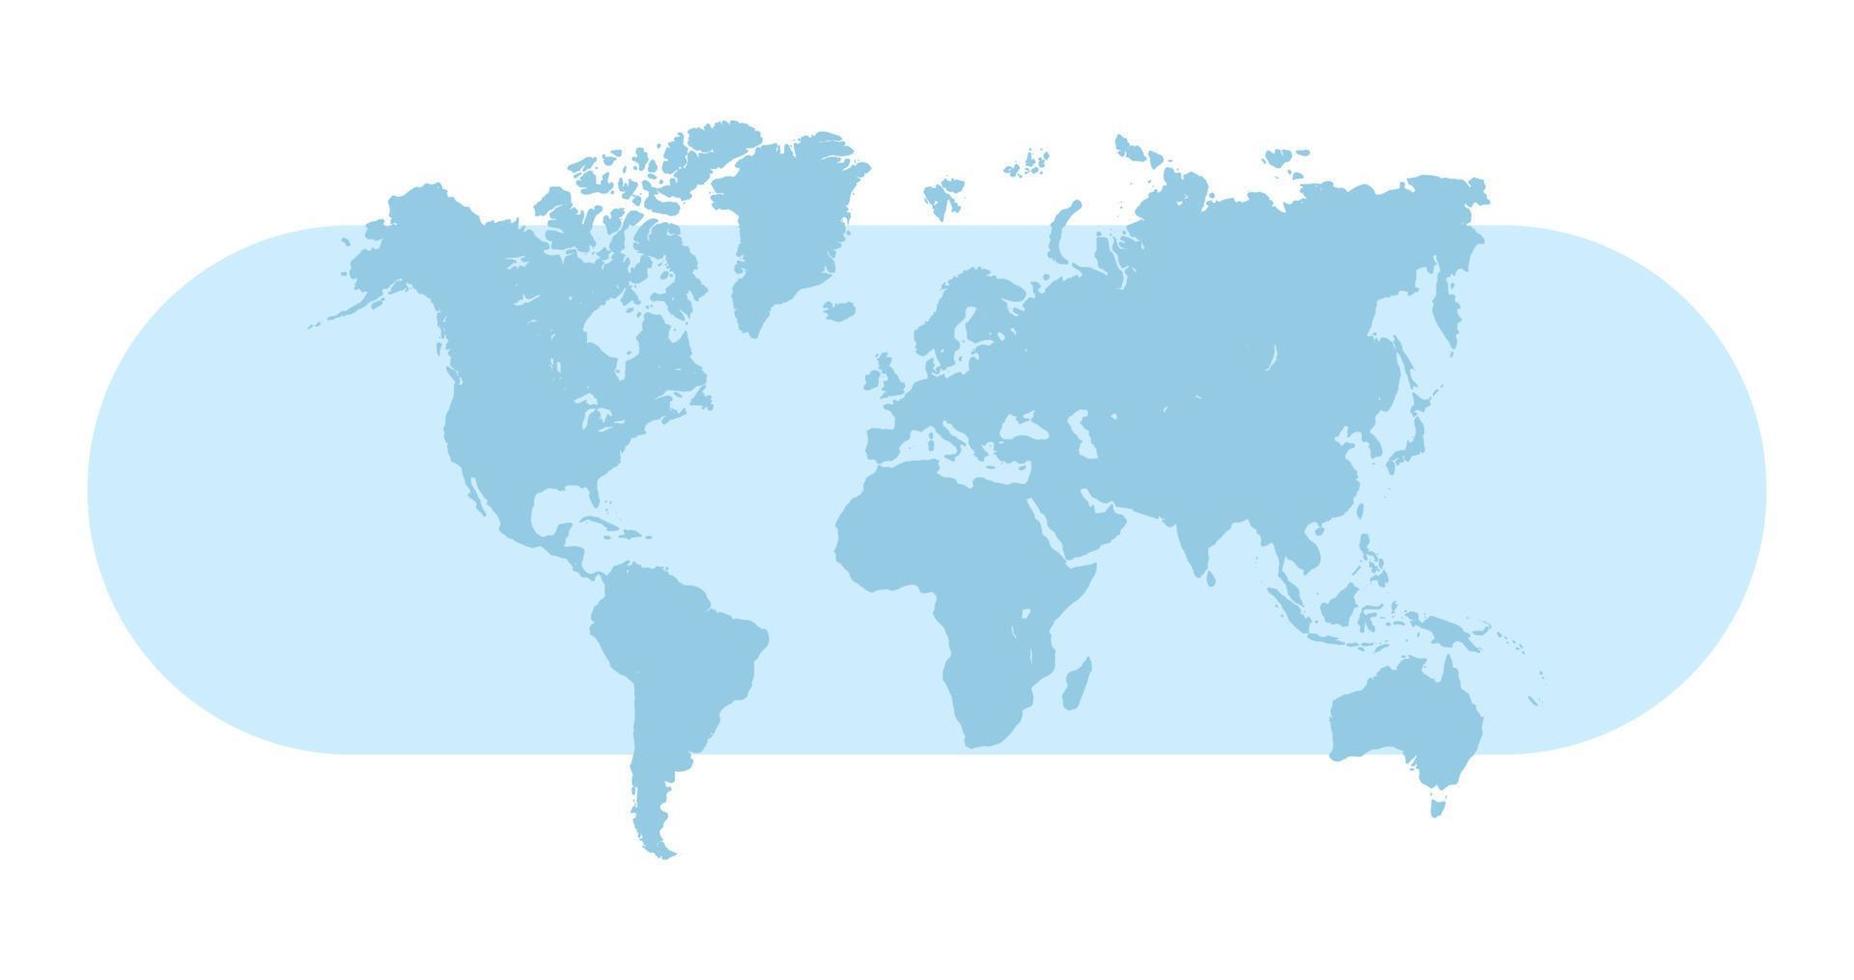 planeta tierra y mapa del mundo ilustración vectorial plana. vector